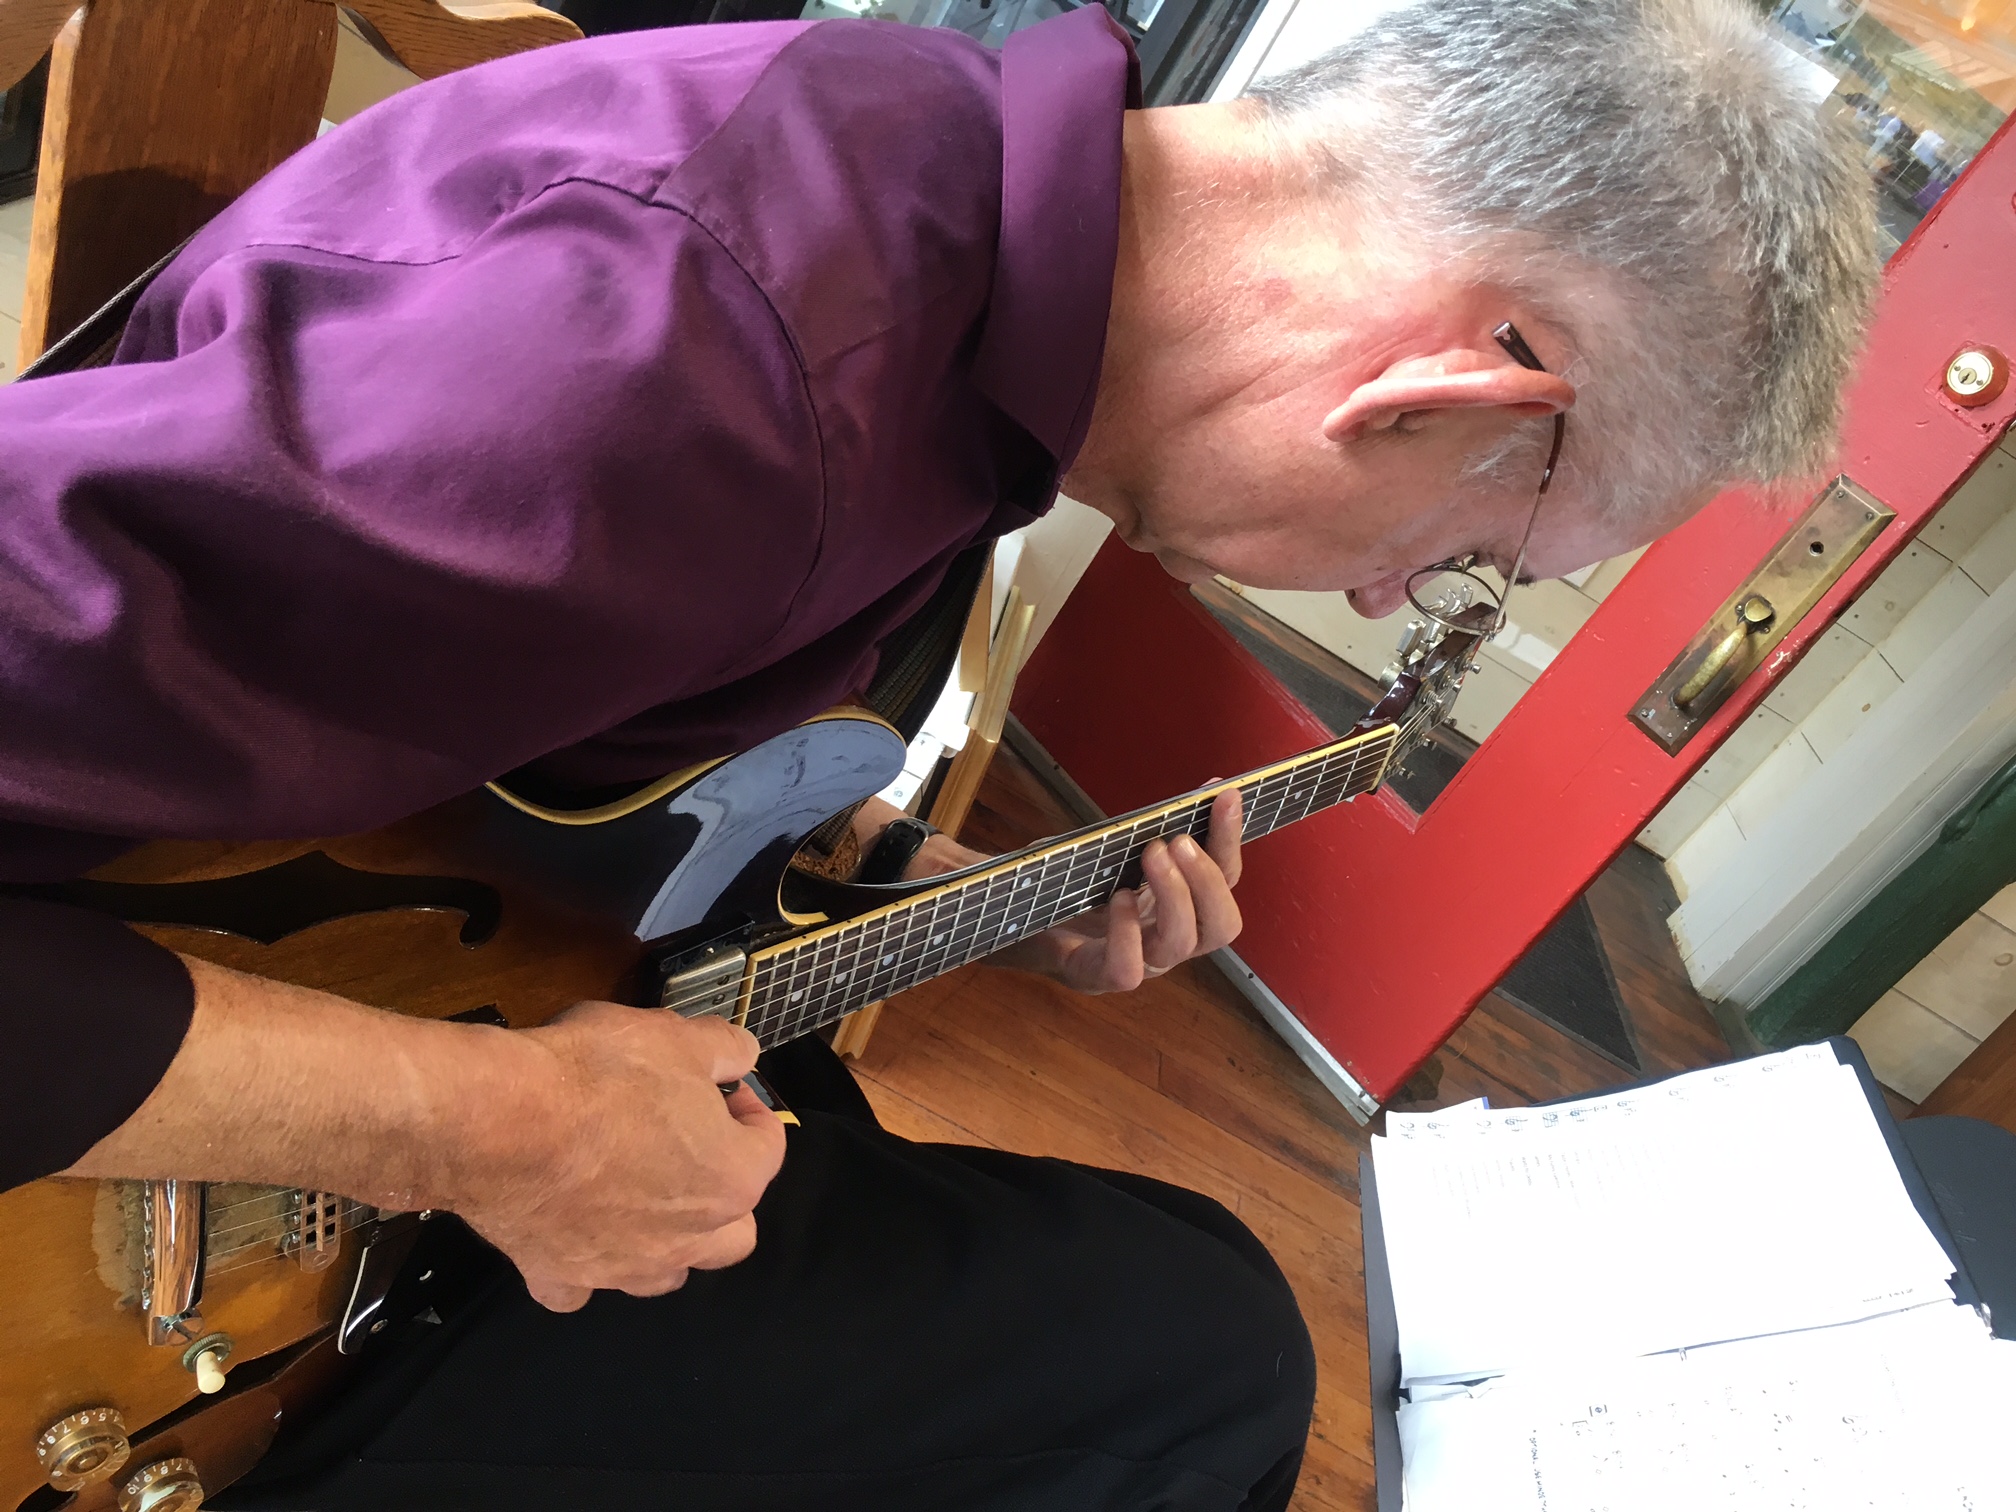 David Lawlor plays jazz guitar in Sylvan Gallery